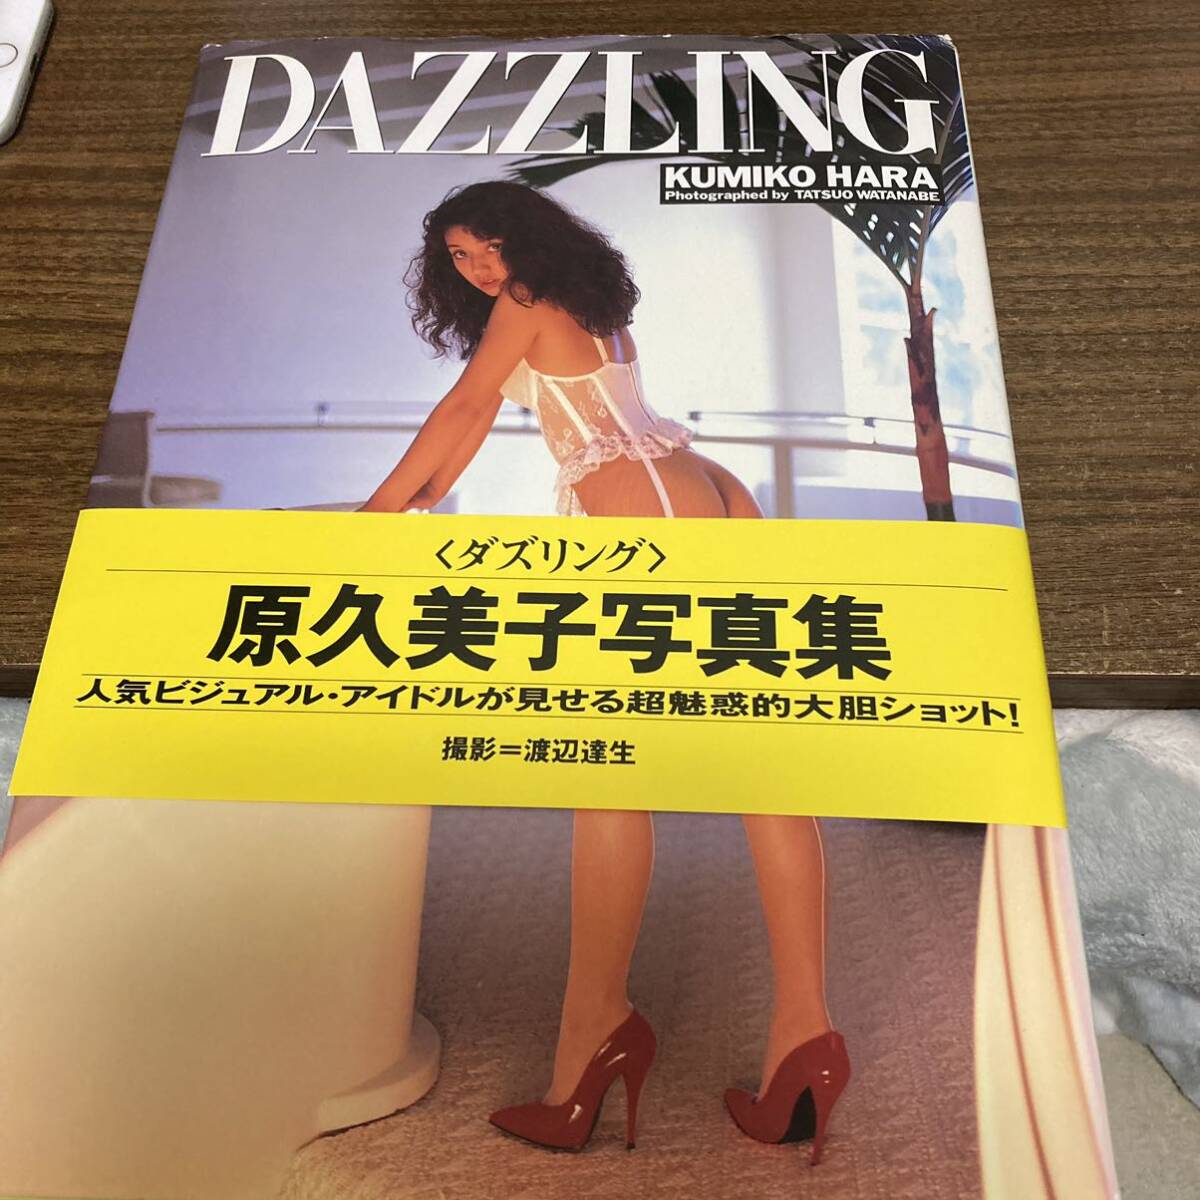 原久美子 写真集 DAZZLING スコラ 初版 帯付 クリックポスト可能の画像1